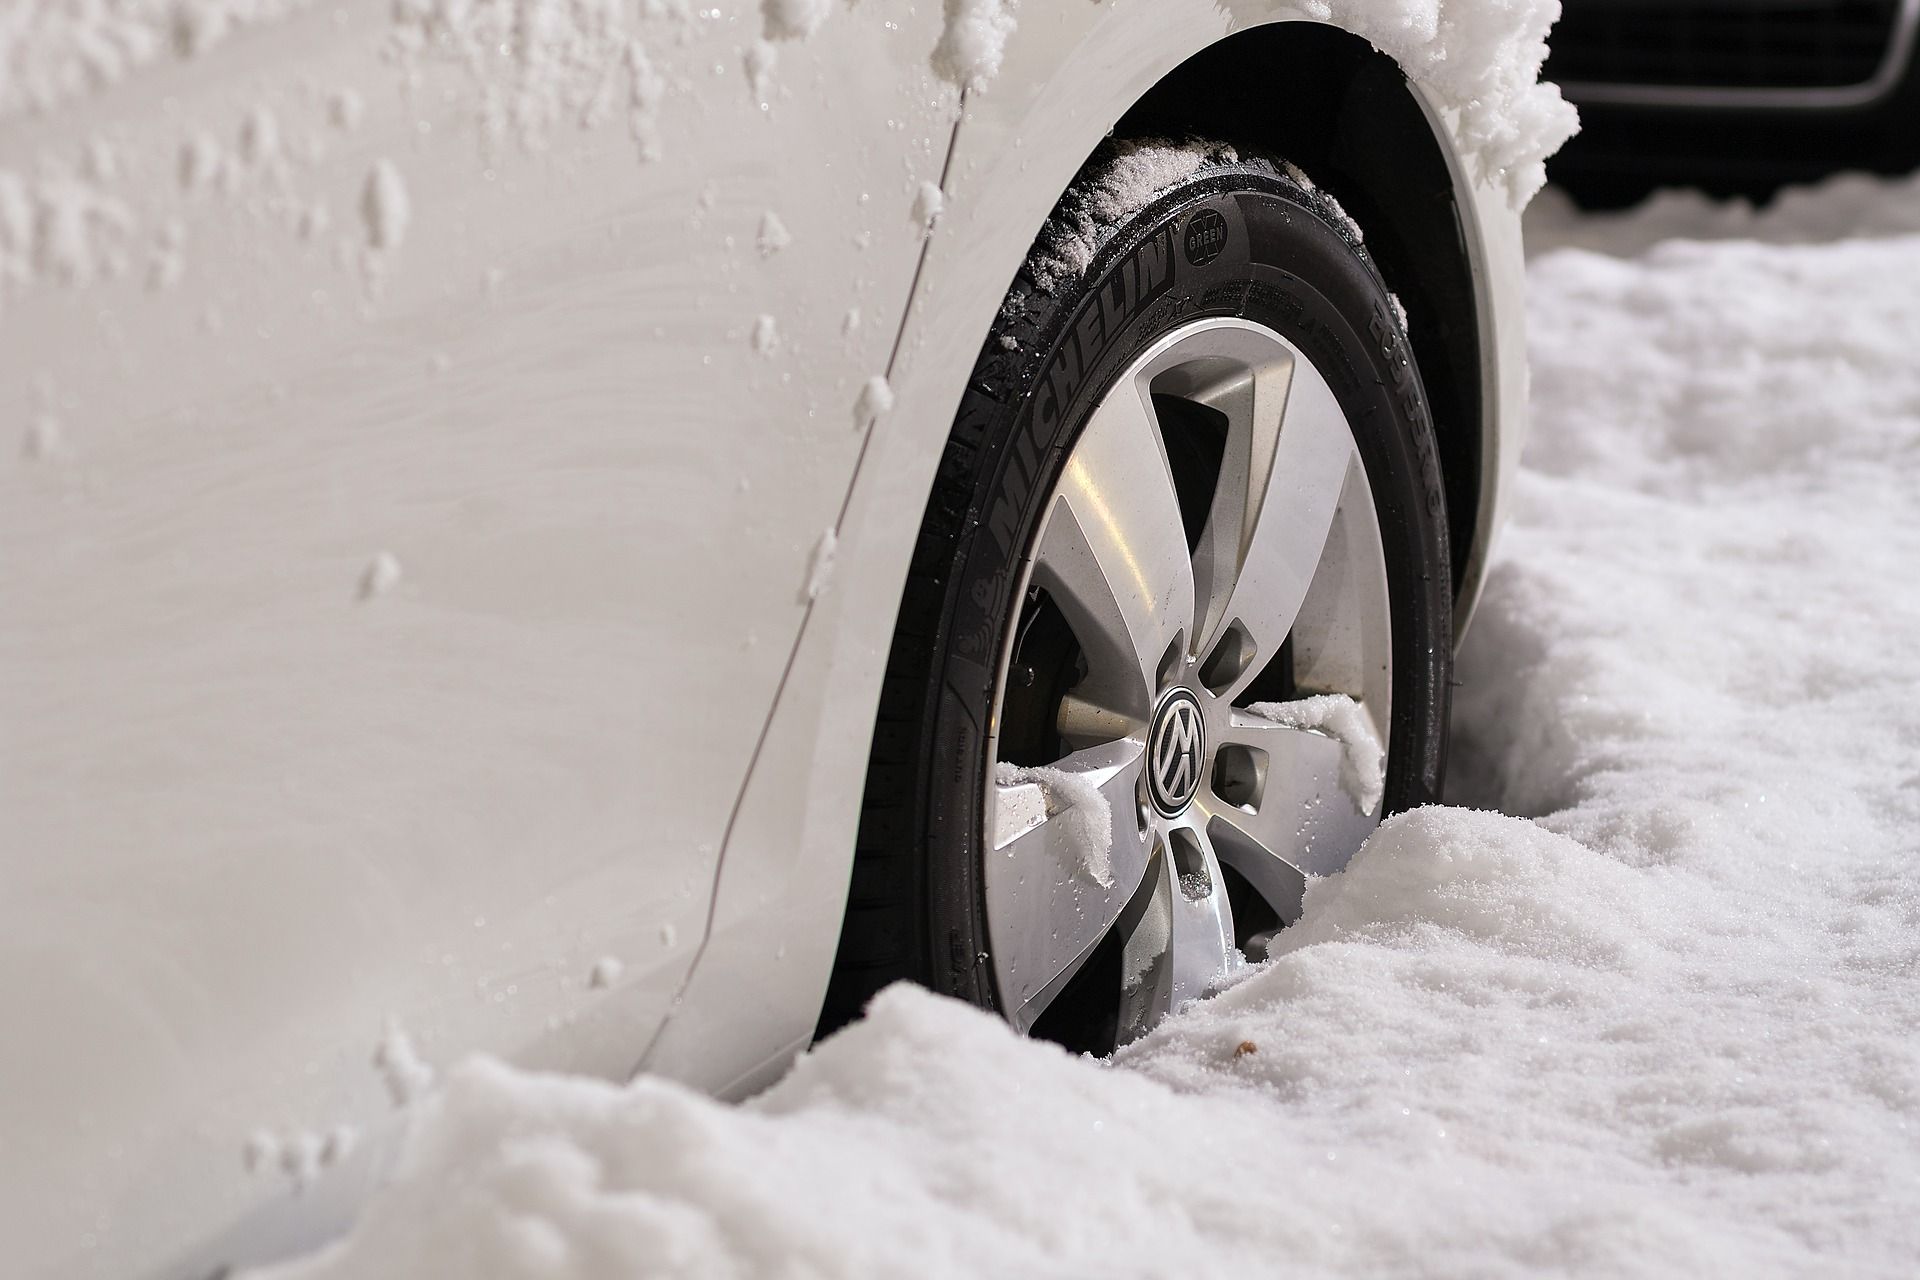 Conducir con nieve: ¿neumáticos de invierno o cadenas?